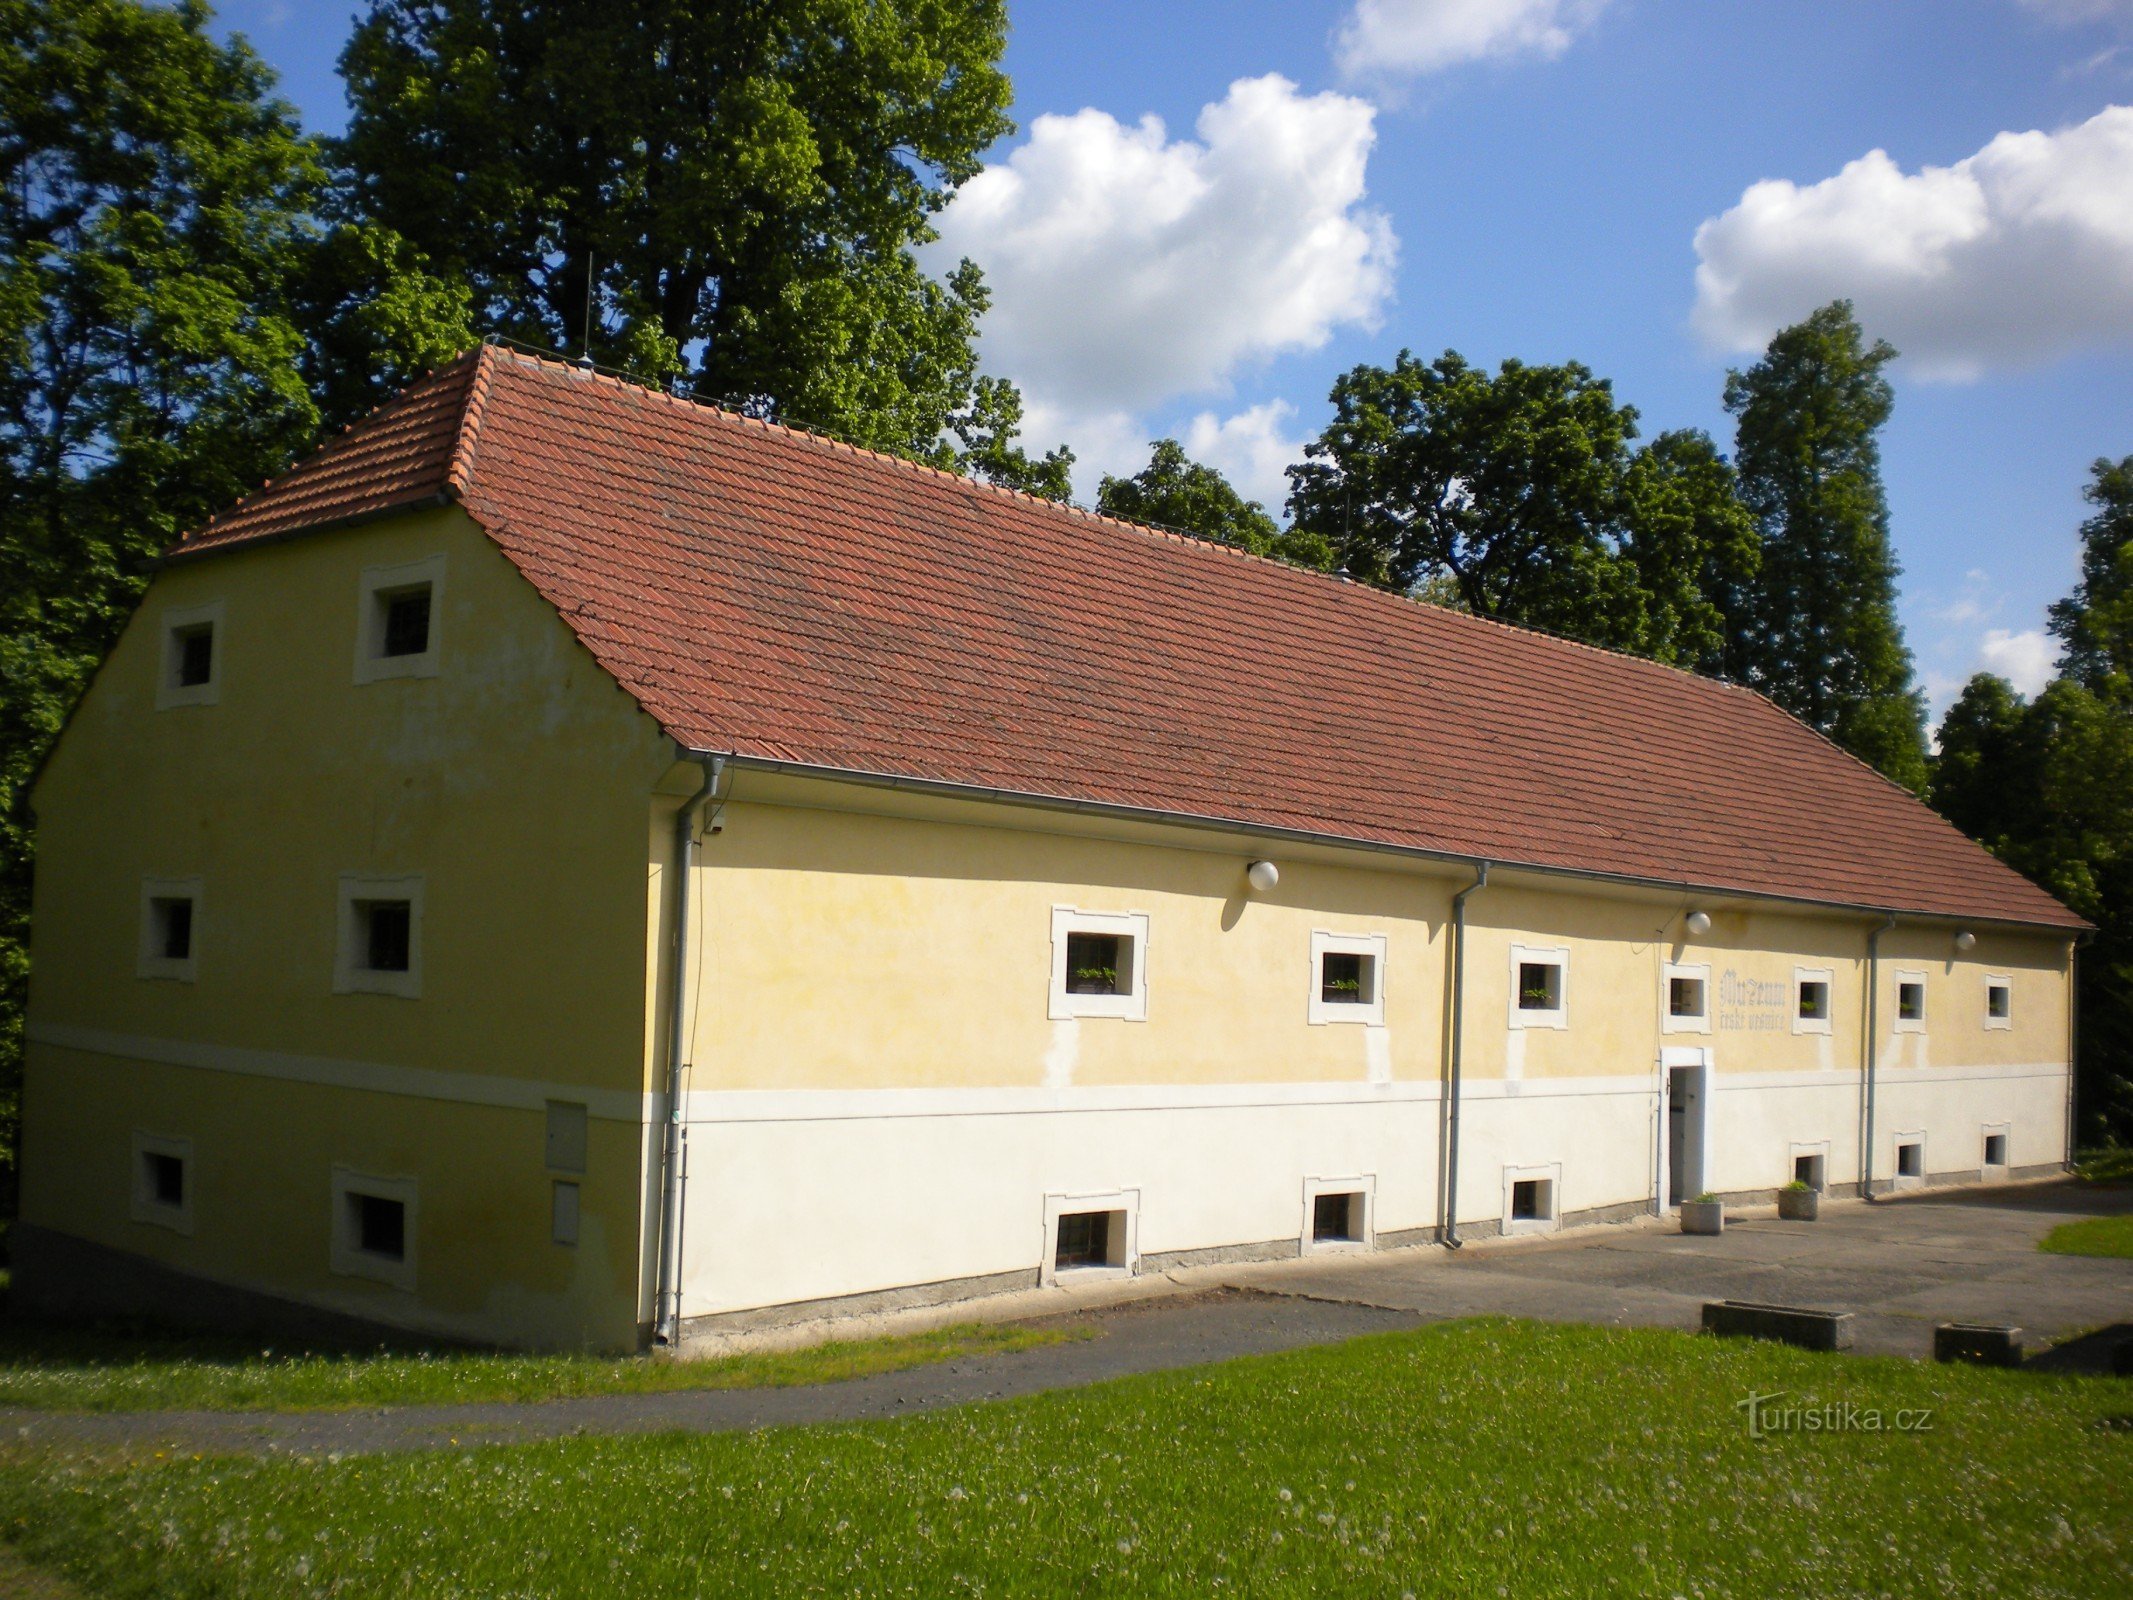 Museum van het Tsjechische dorp